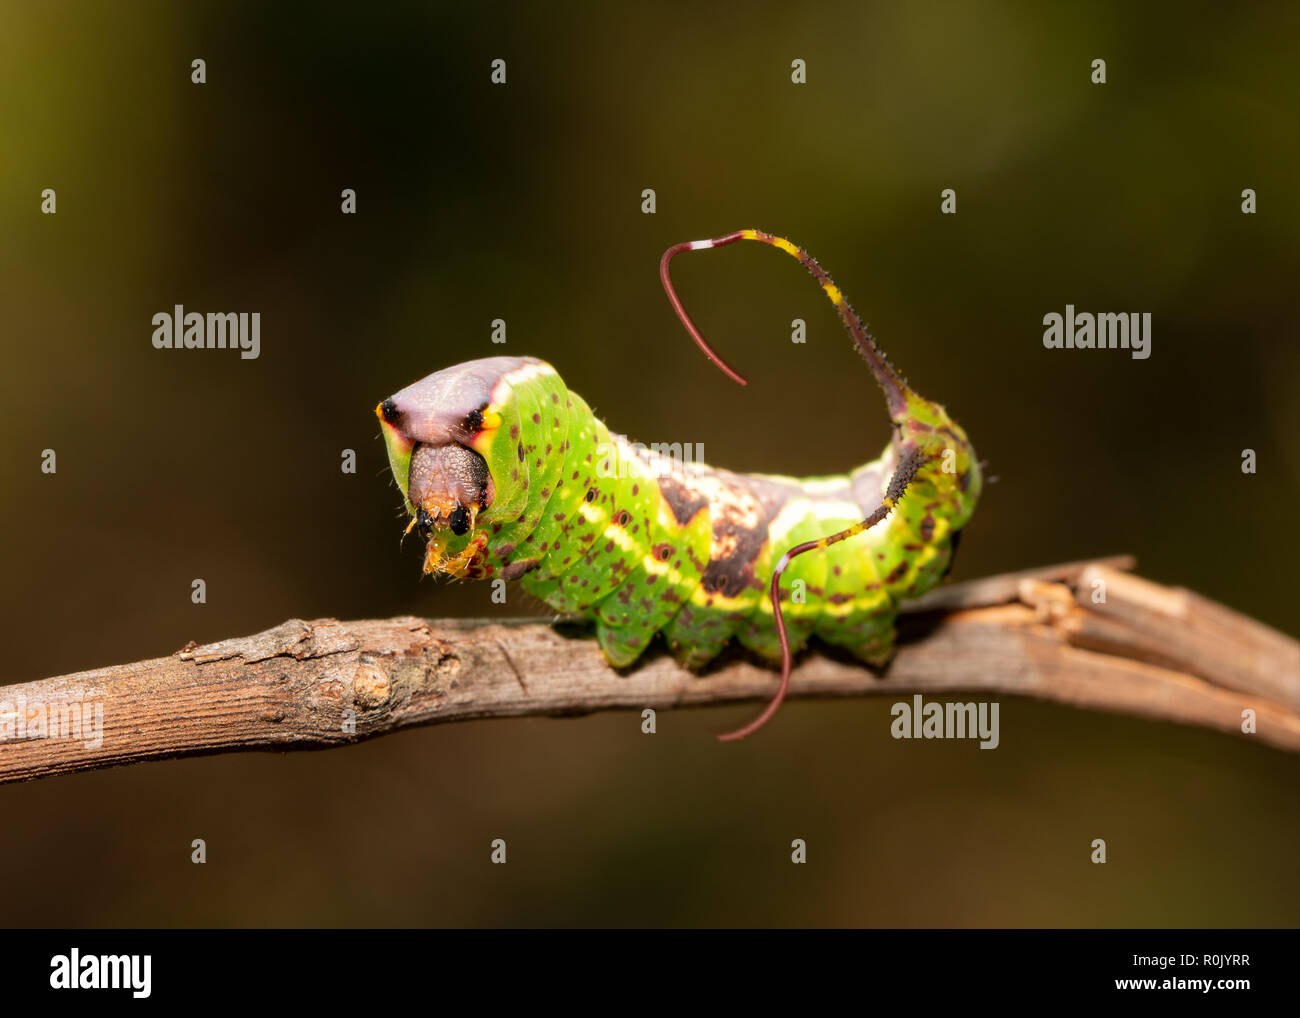 Spät instar Caterpillar Schwarz geätzt Prominente Motten angezeigte sein Schwanz Flagellen um ein Raubtier zu erschrecken Stockfoto